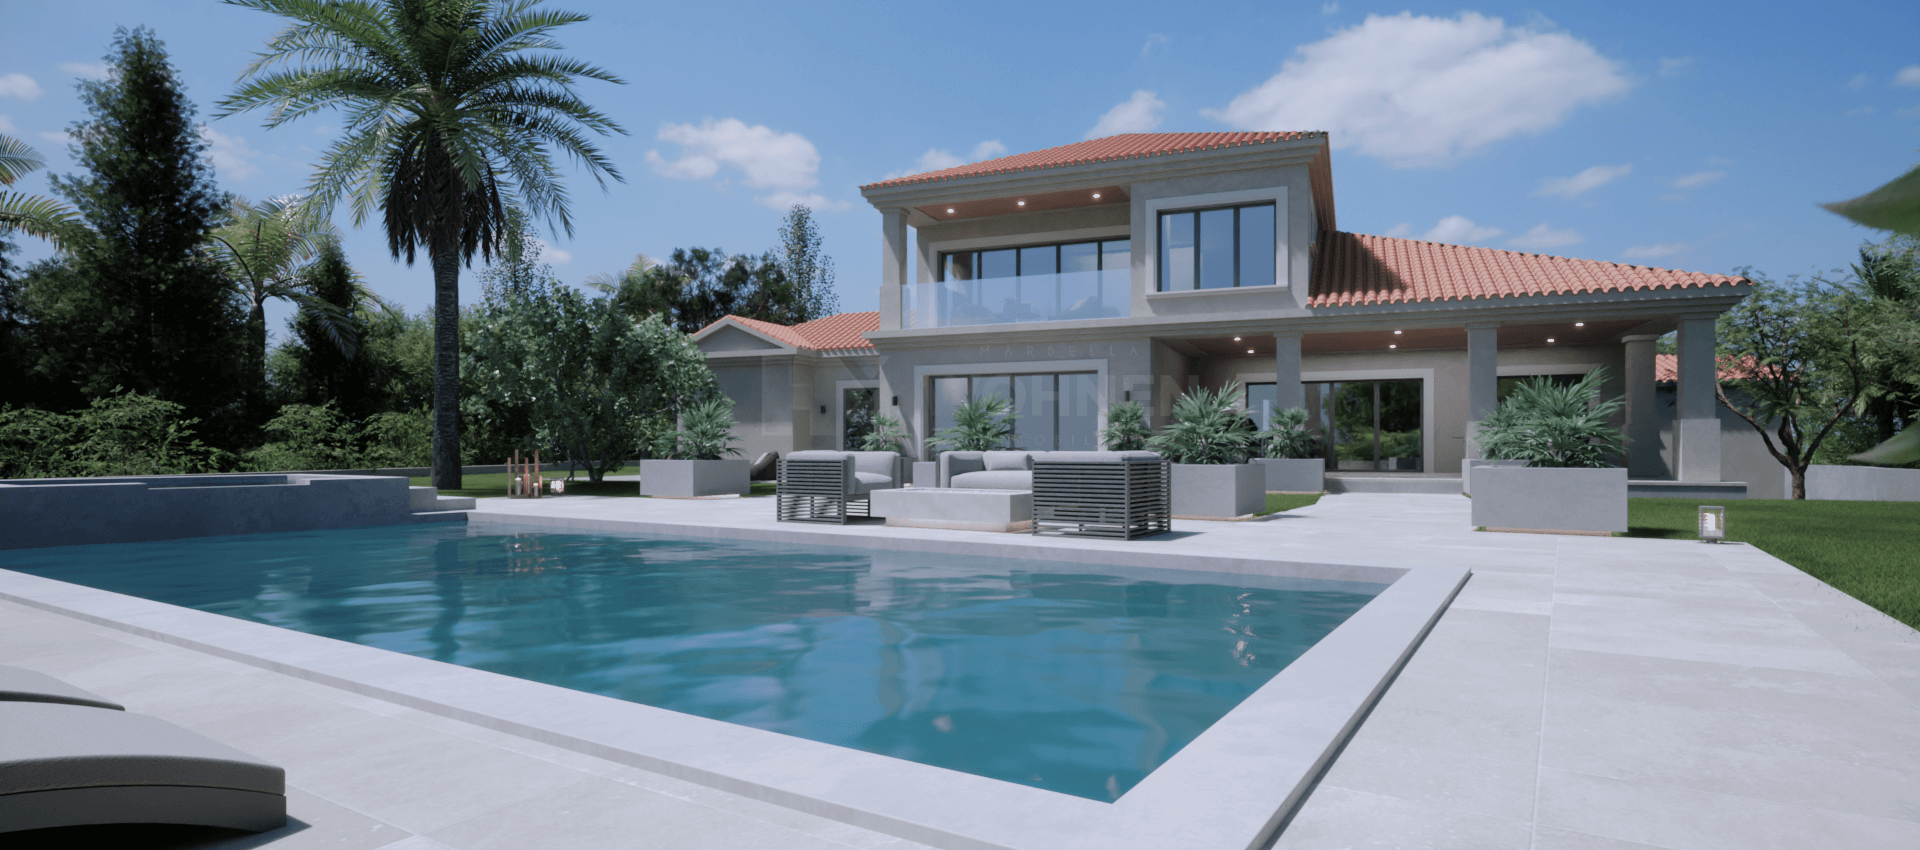 Moderna villa de estilo andaluz en primera línea de golf